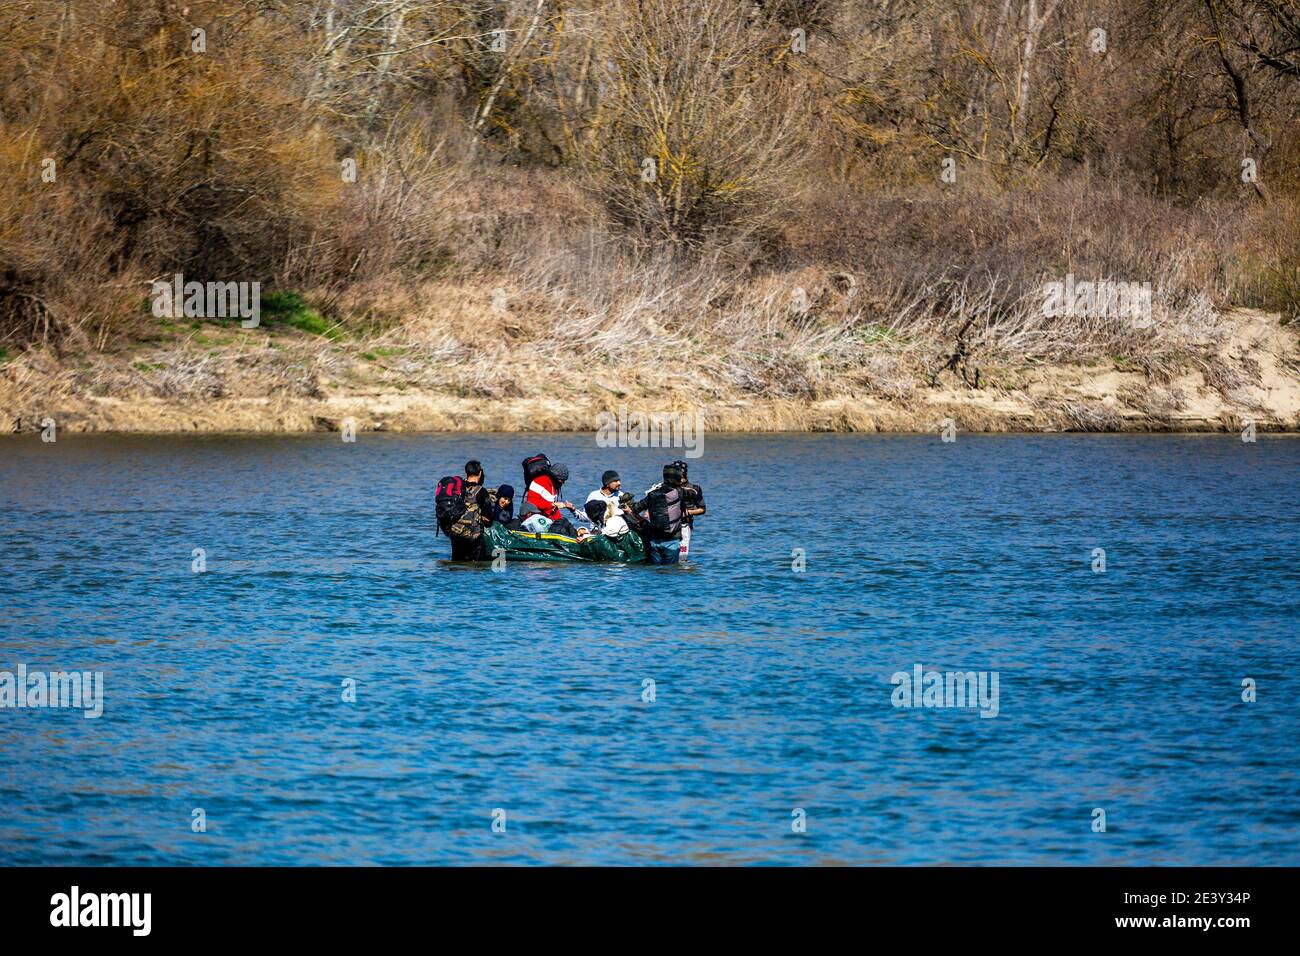 Edirne, Turquie - 4 mars 2020 : des réfugiés syriens, afghans et autres tentent d'atteindre l'Europe par bateau, de l'autre côté de la frontière grecque, depuis la Turquie Banque D'Images